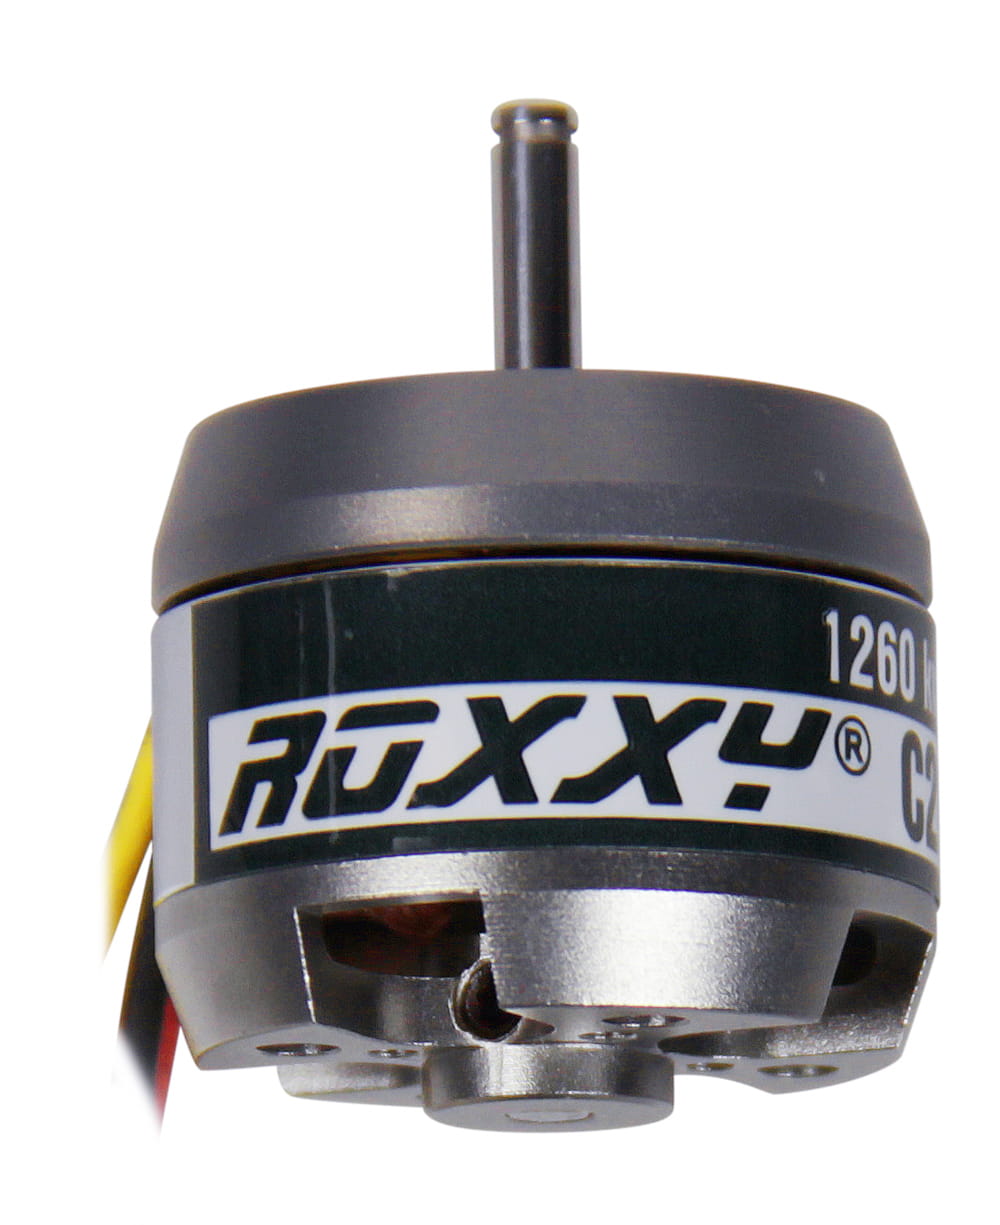 Multiplex ROXXY Brushless Motor BL Outrunner C28-26-1260kV